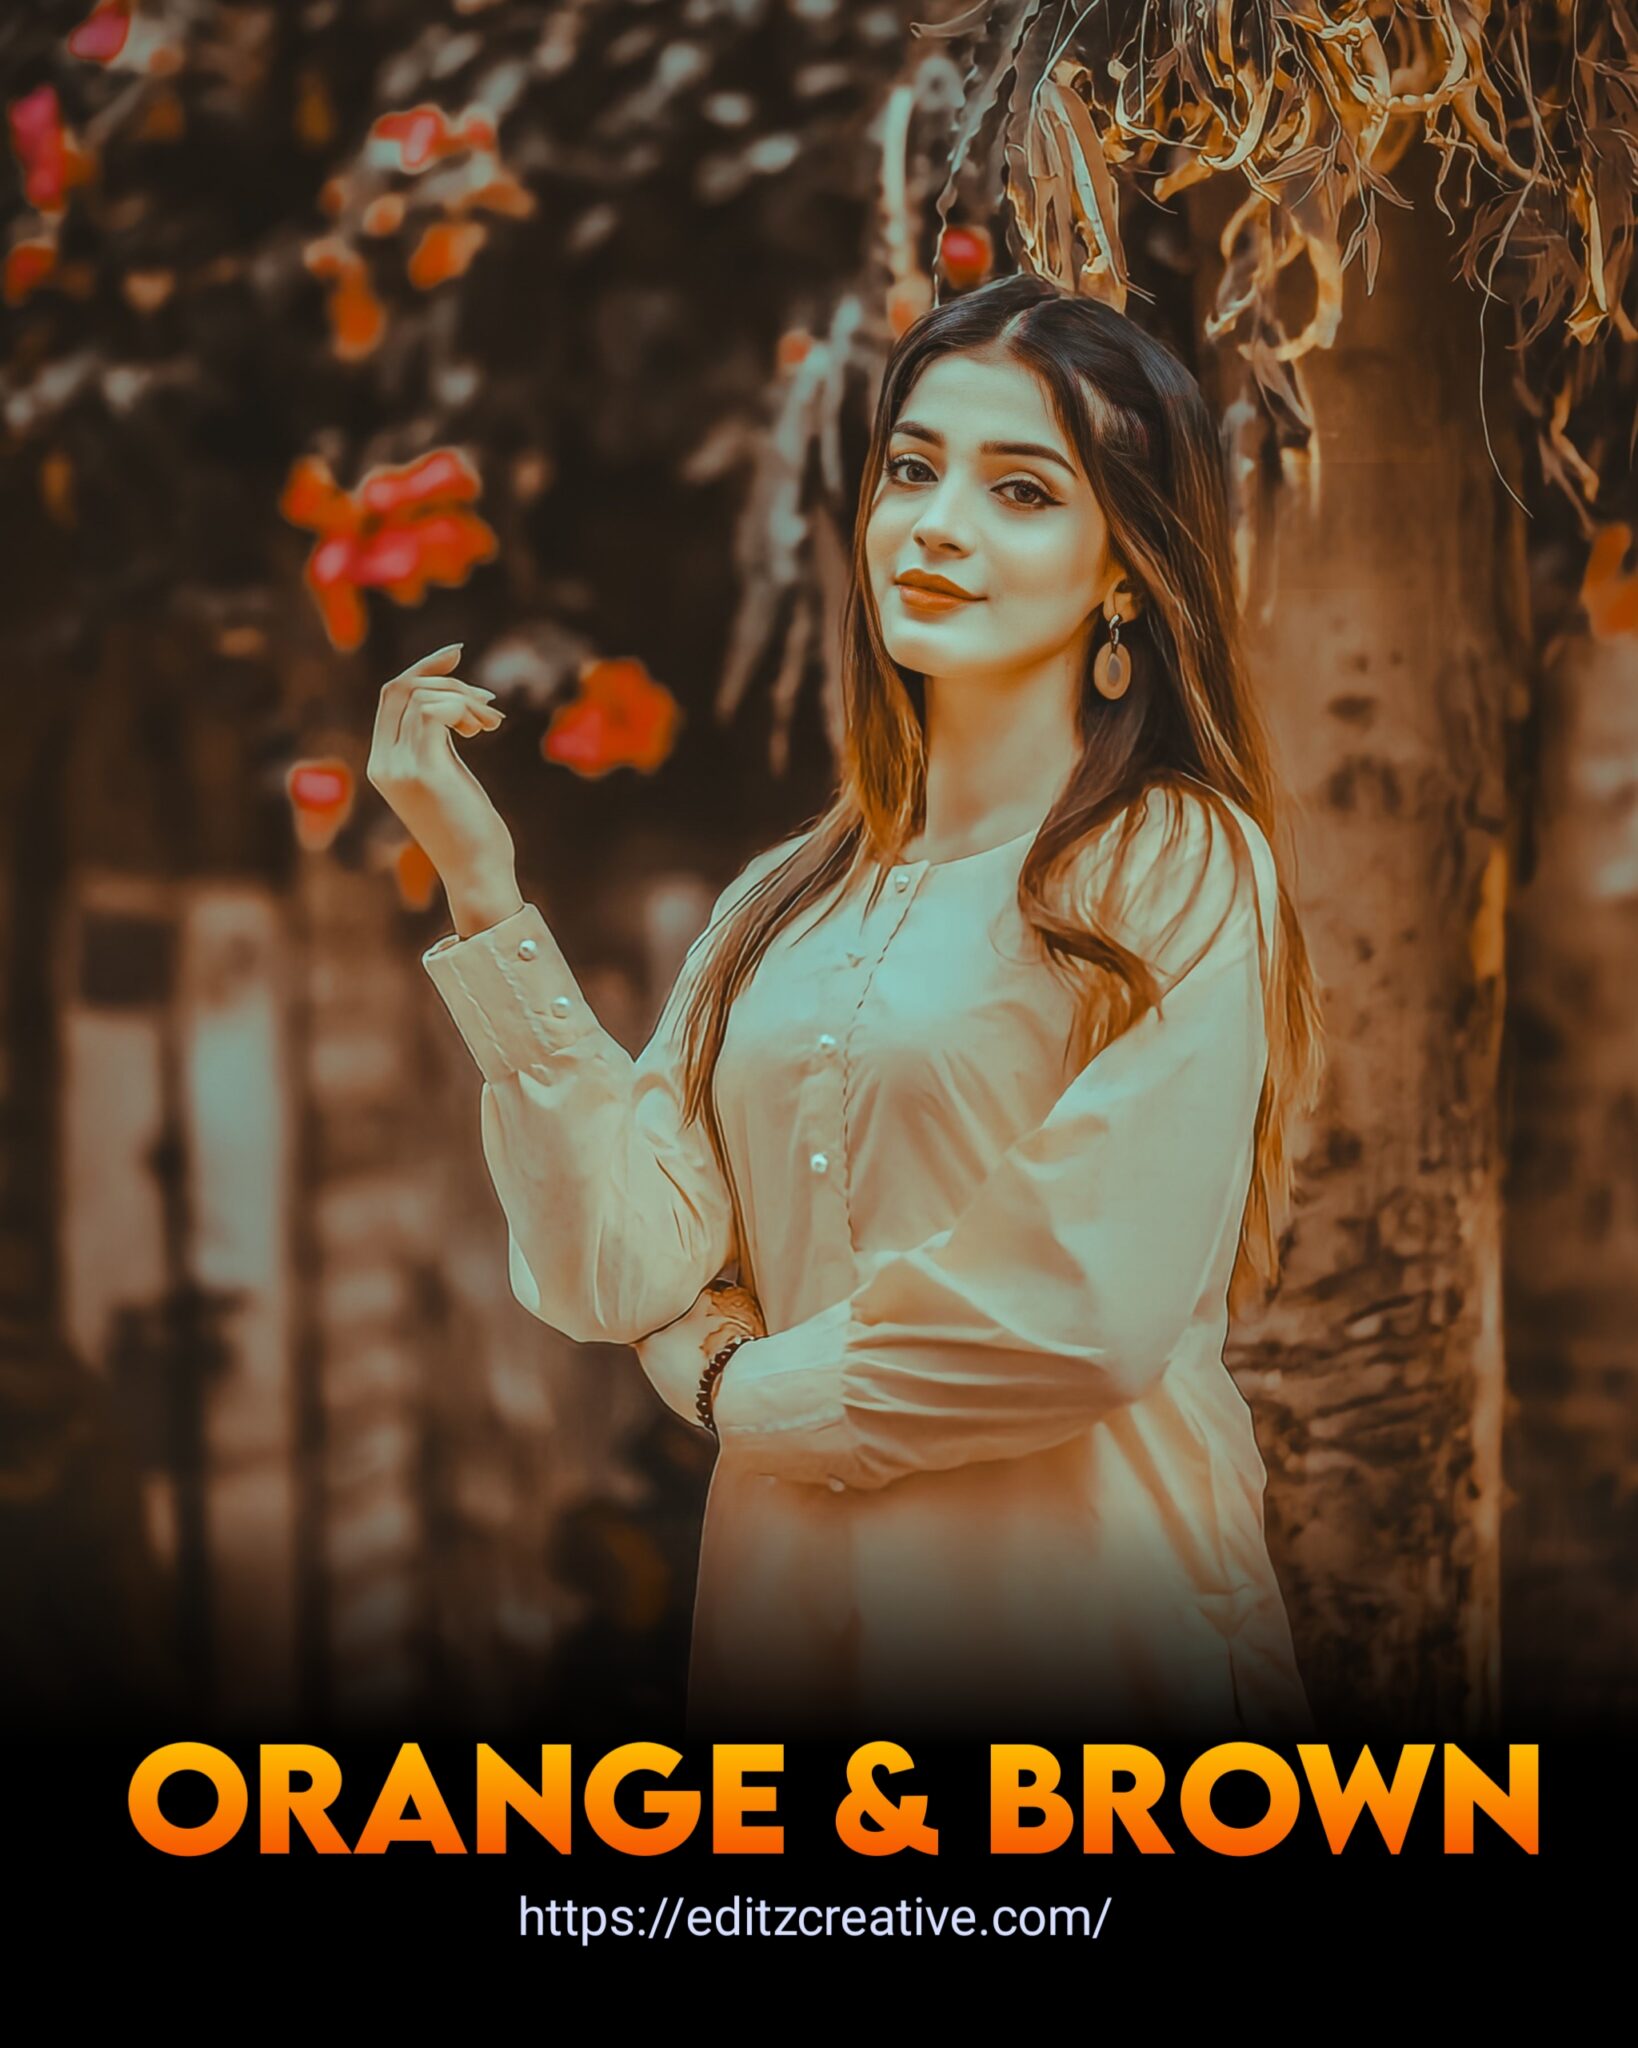 Brown and orange Lightroom preset download